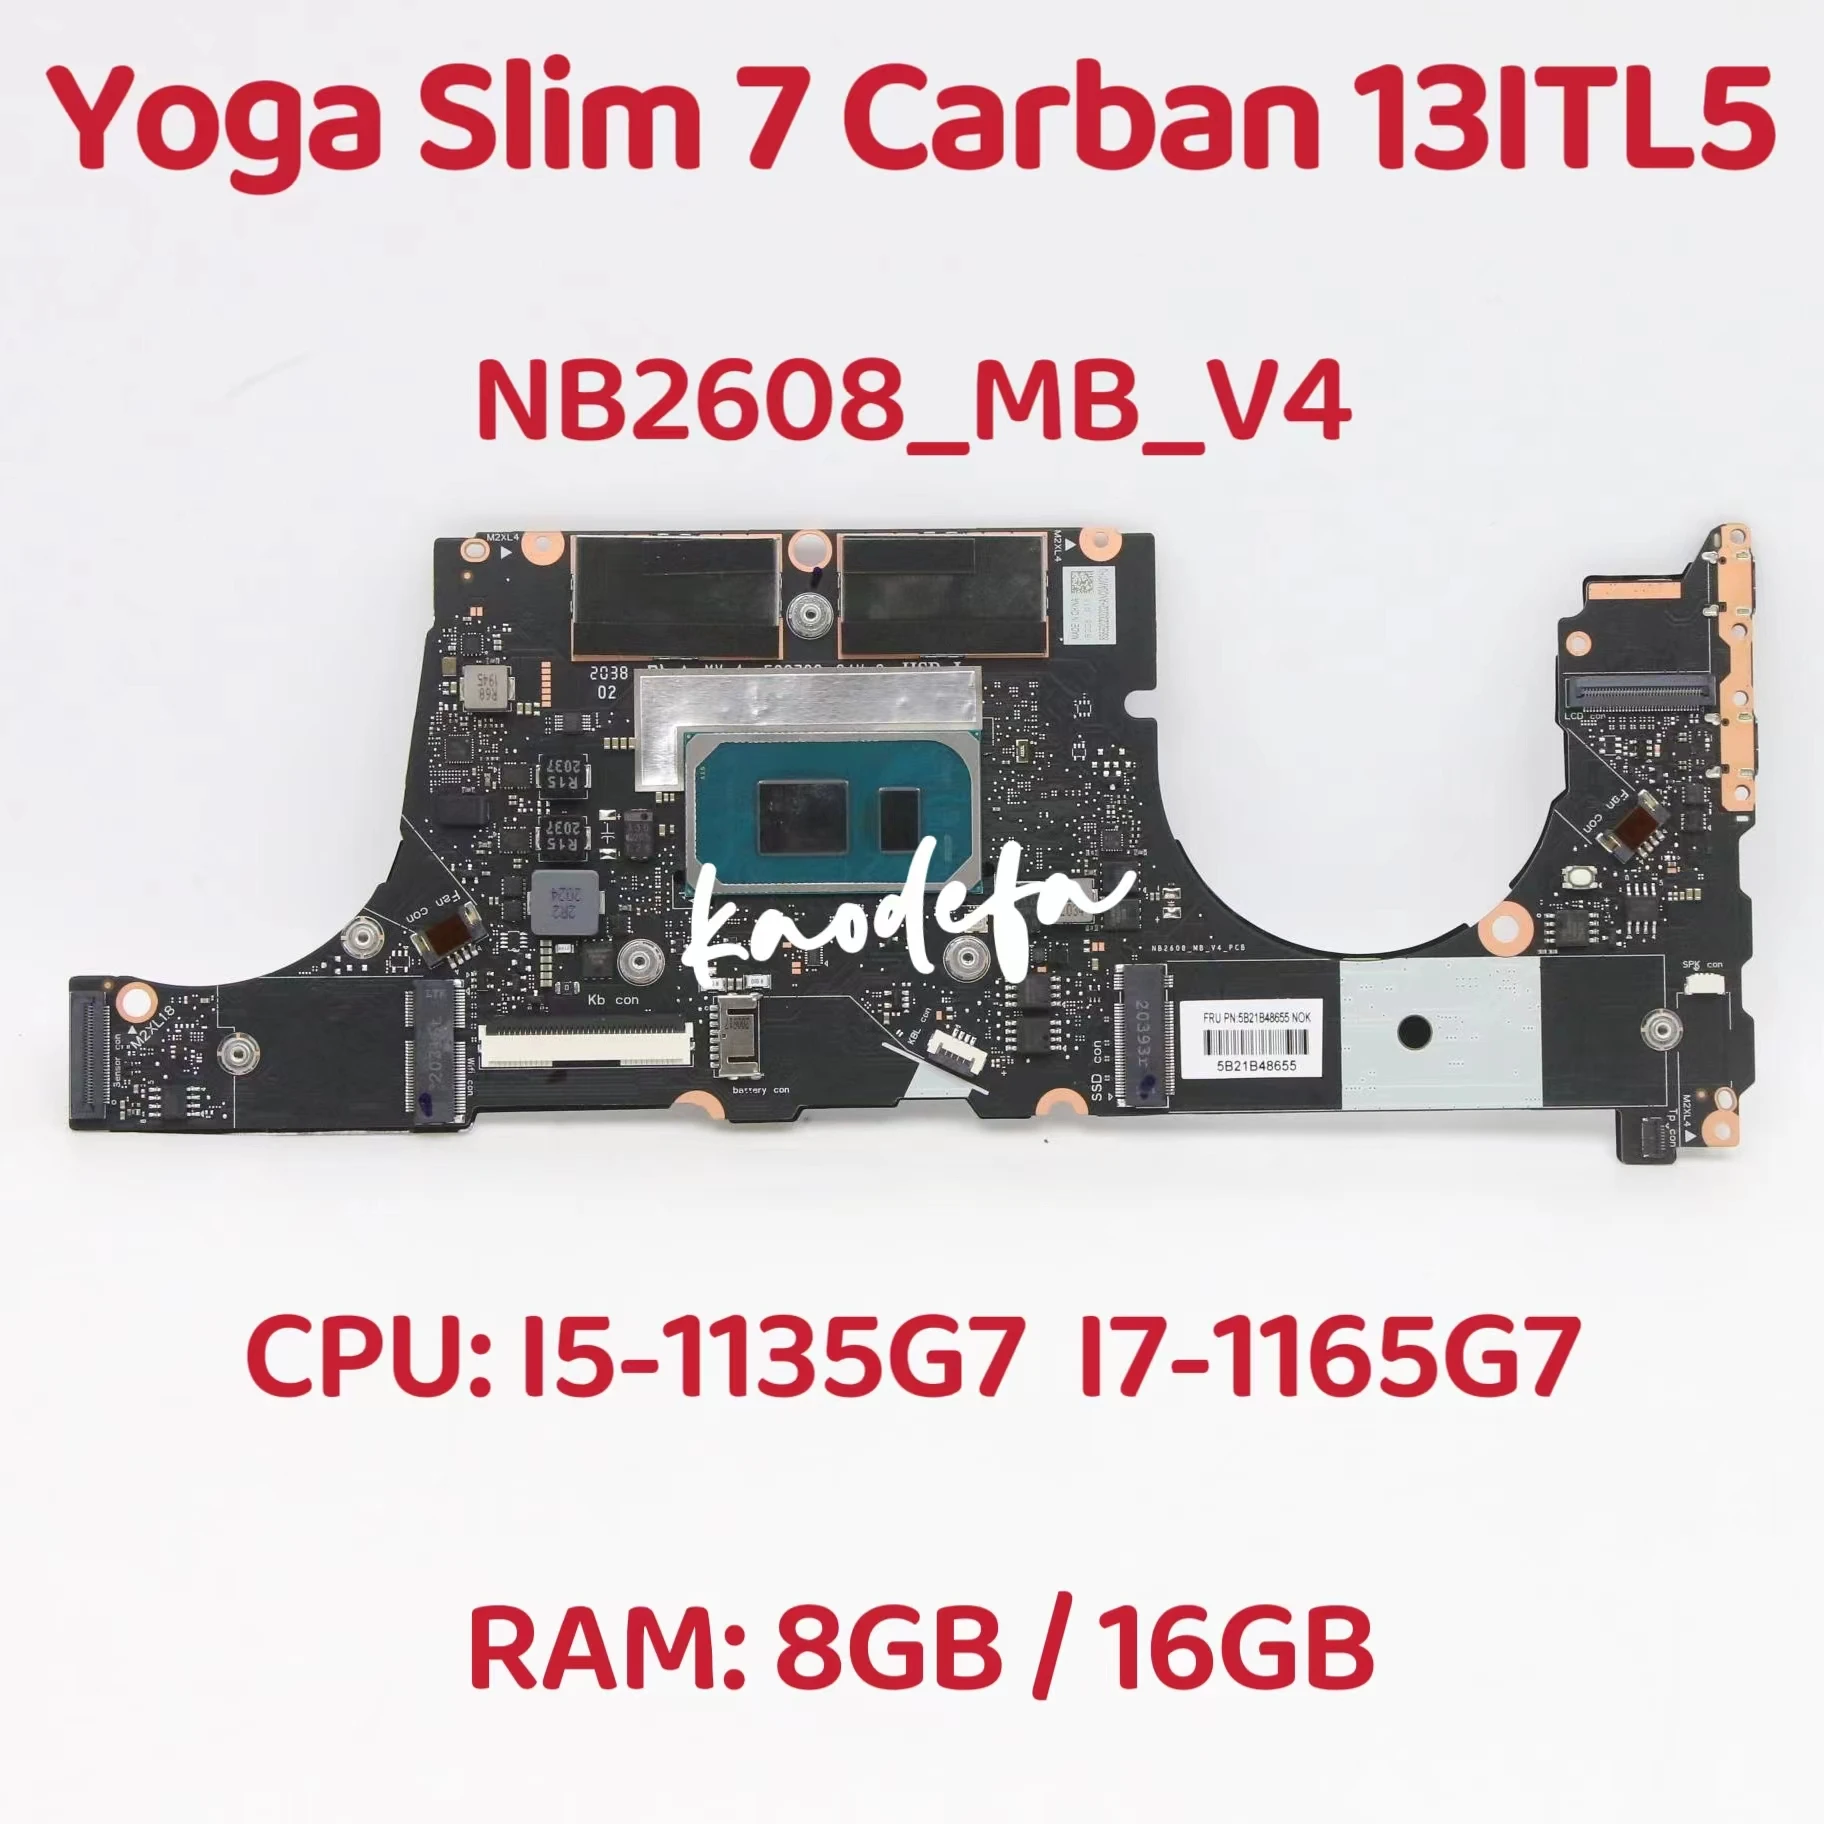 

NB2608_MB_V4 For Lenovo IdeaPad Yoga Slim 7 Carbon 13ITL5 Laptop Motherboard CPU: I5-1135G7/ I7-1165G7 RAM:8GB/16GB DDR4 Test OK